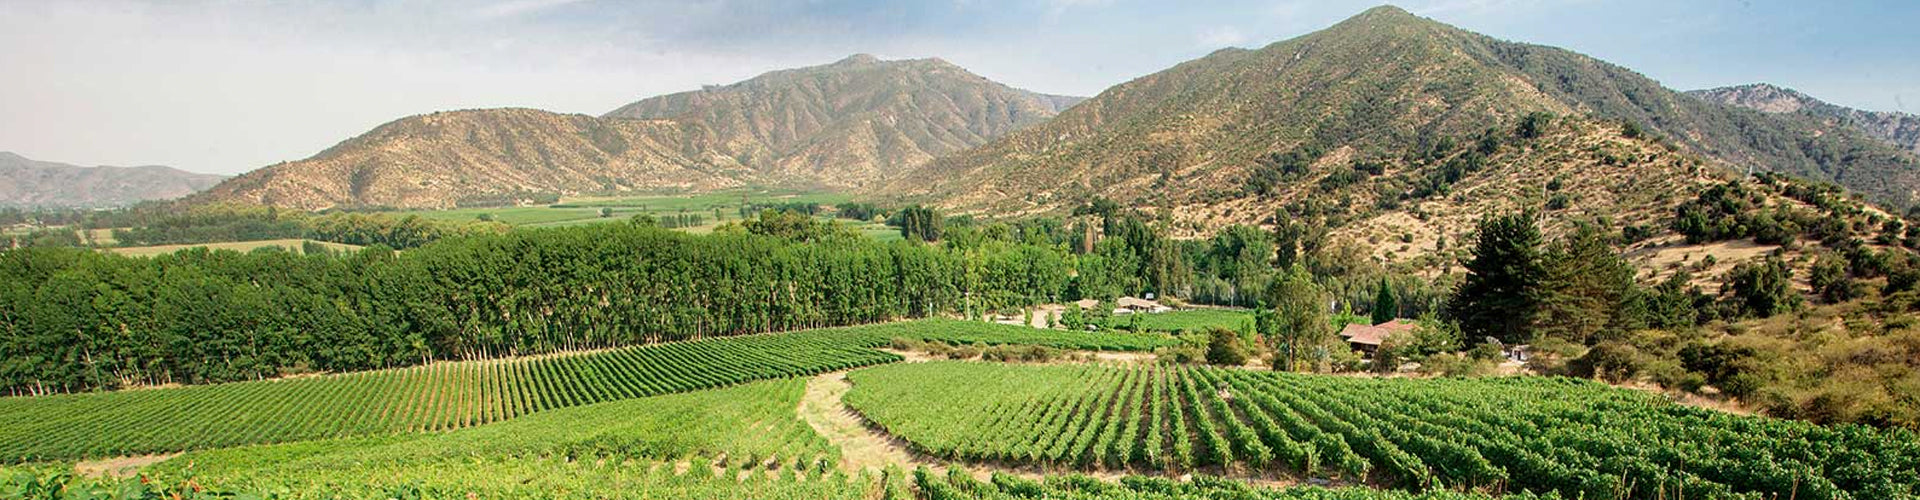 Undurraga Vineyards in Chile